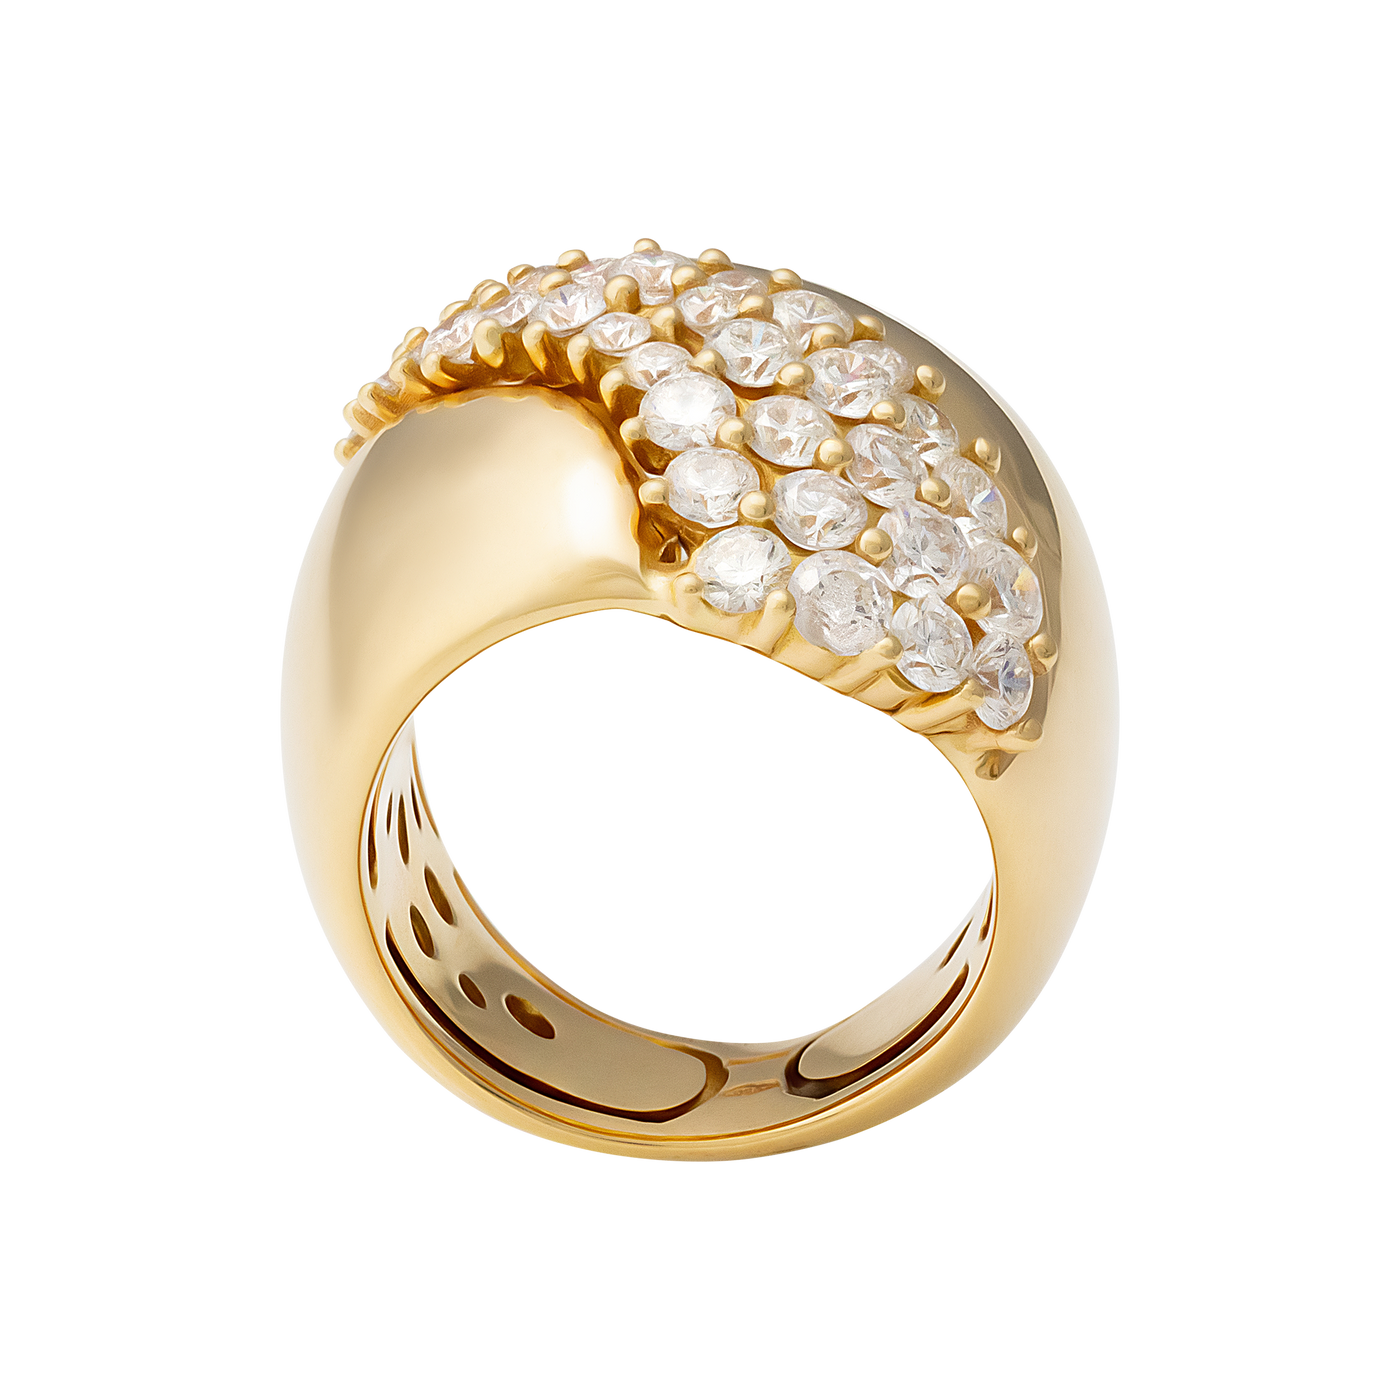 Stefan Hafner 18K Yellow Gold 1.98ct Diamond Ring